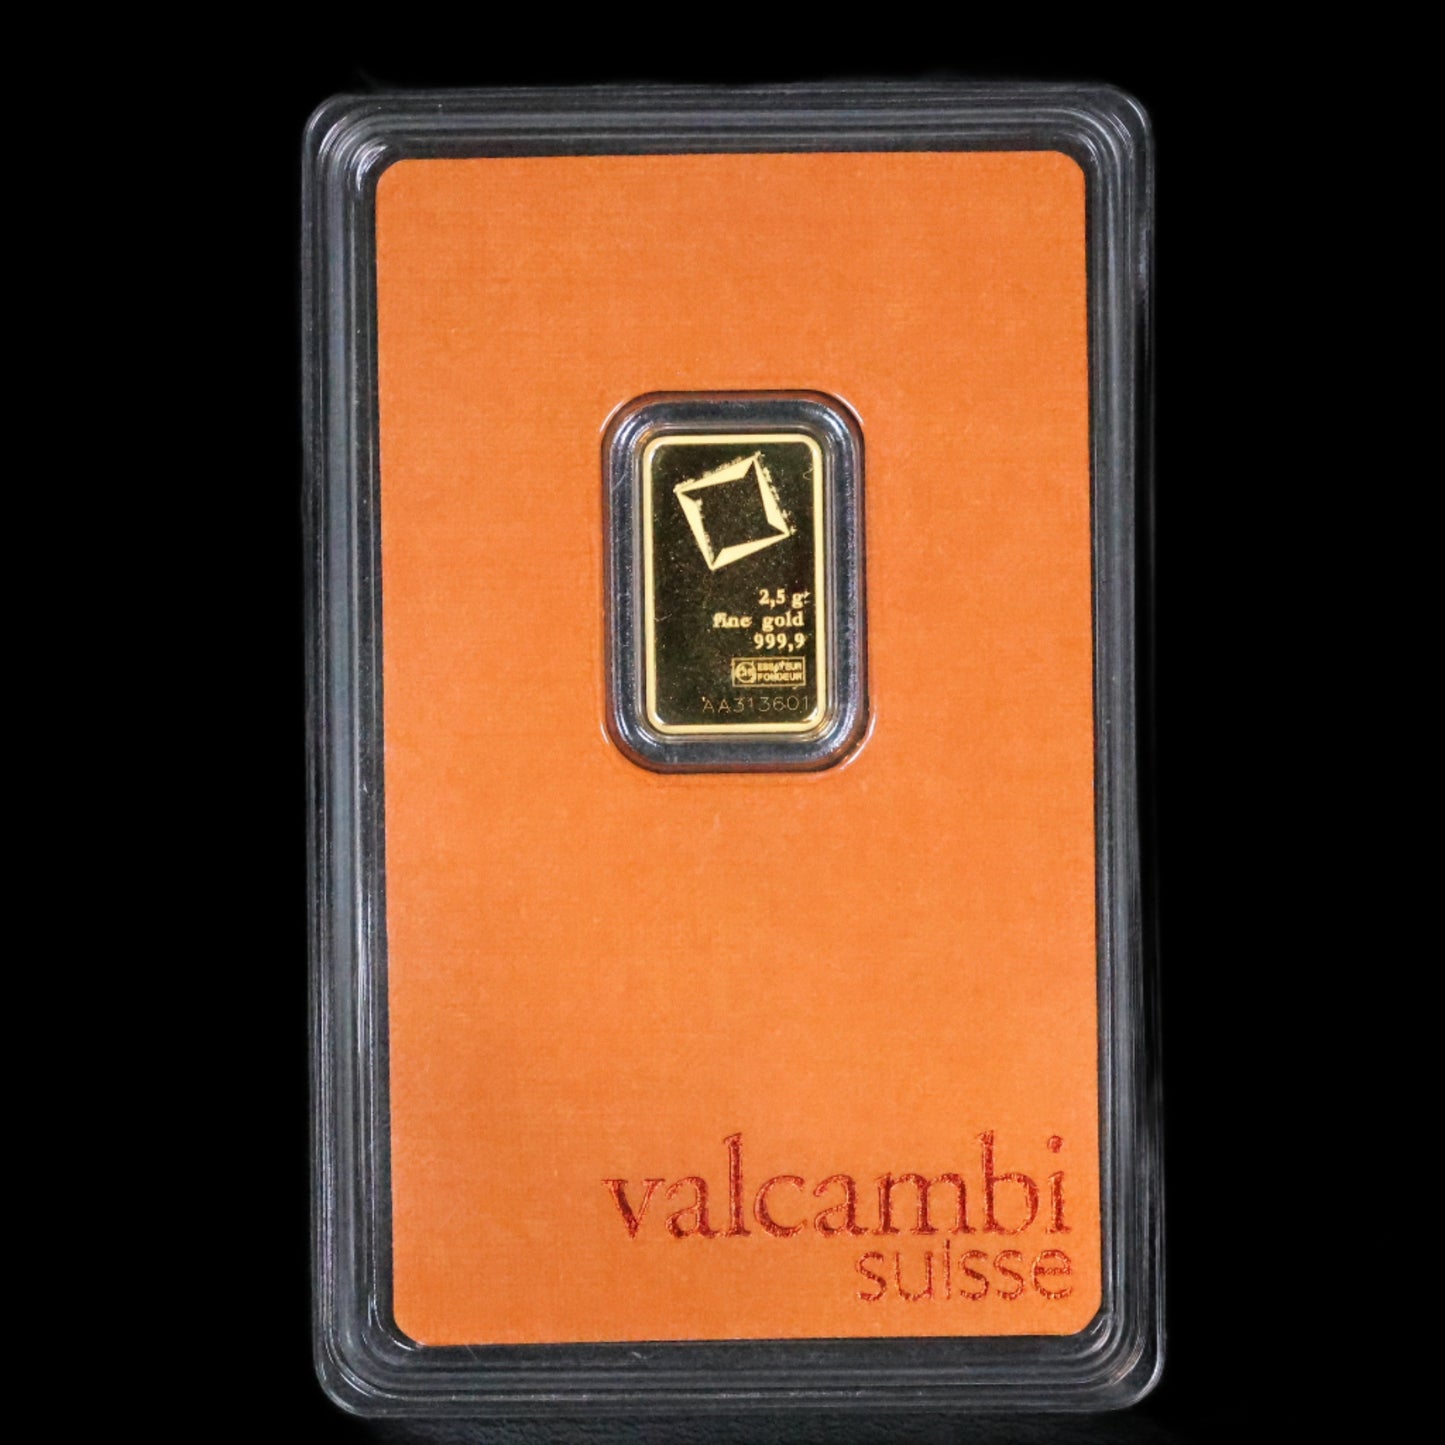 Valcambi Suisse 2.5 Gram Gold Bar .9999 Fine Sealed In Assay